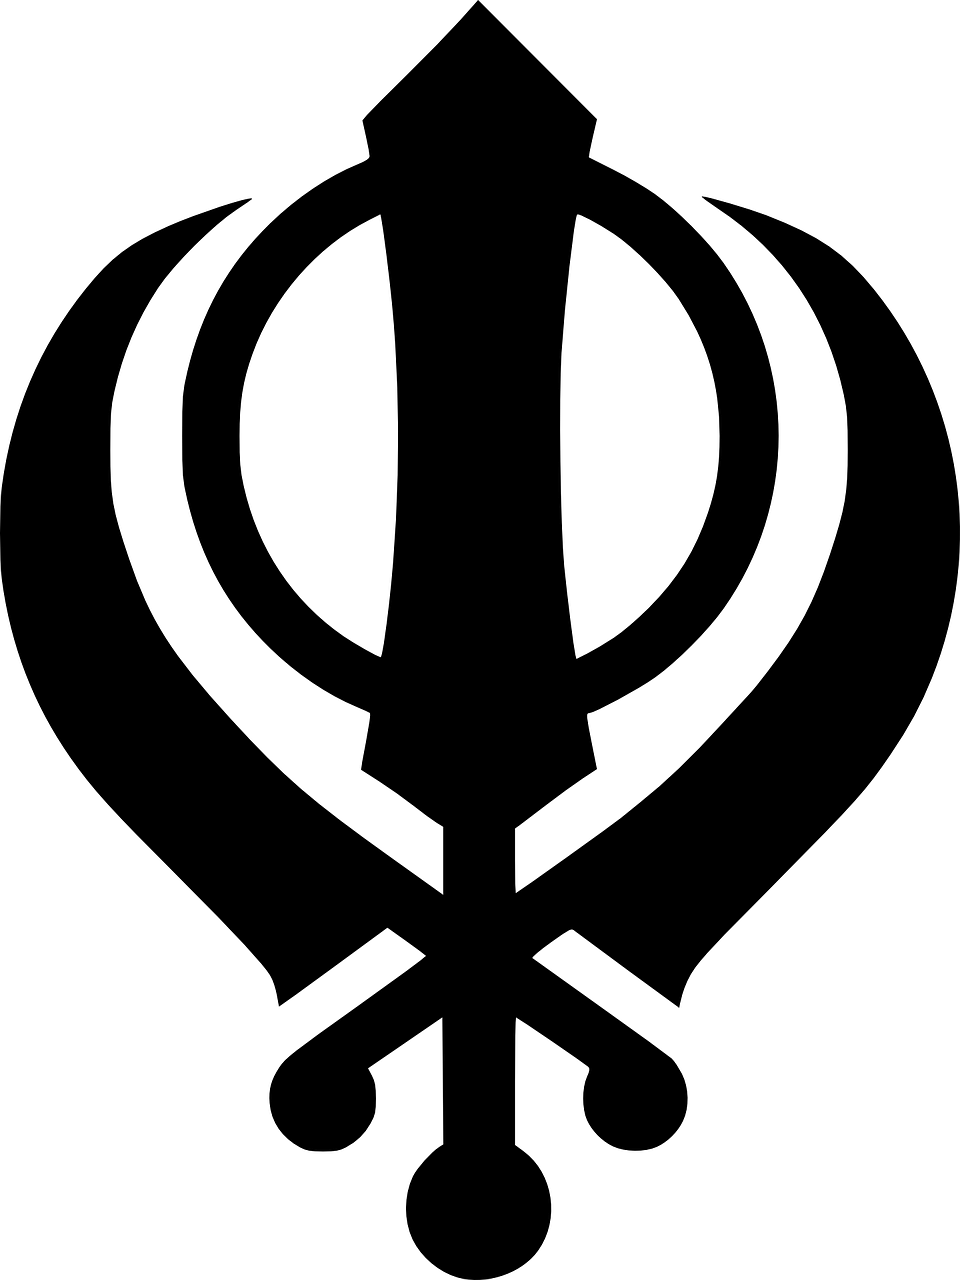 sikhism logo insignia free photo